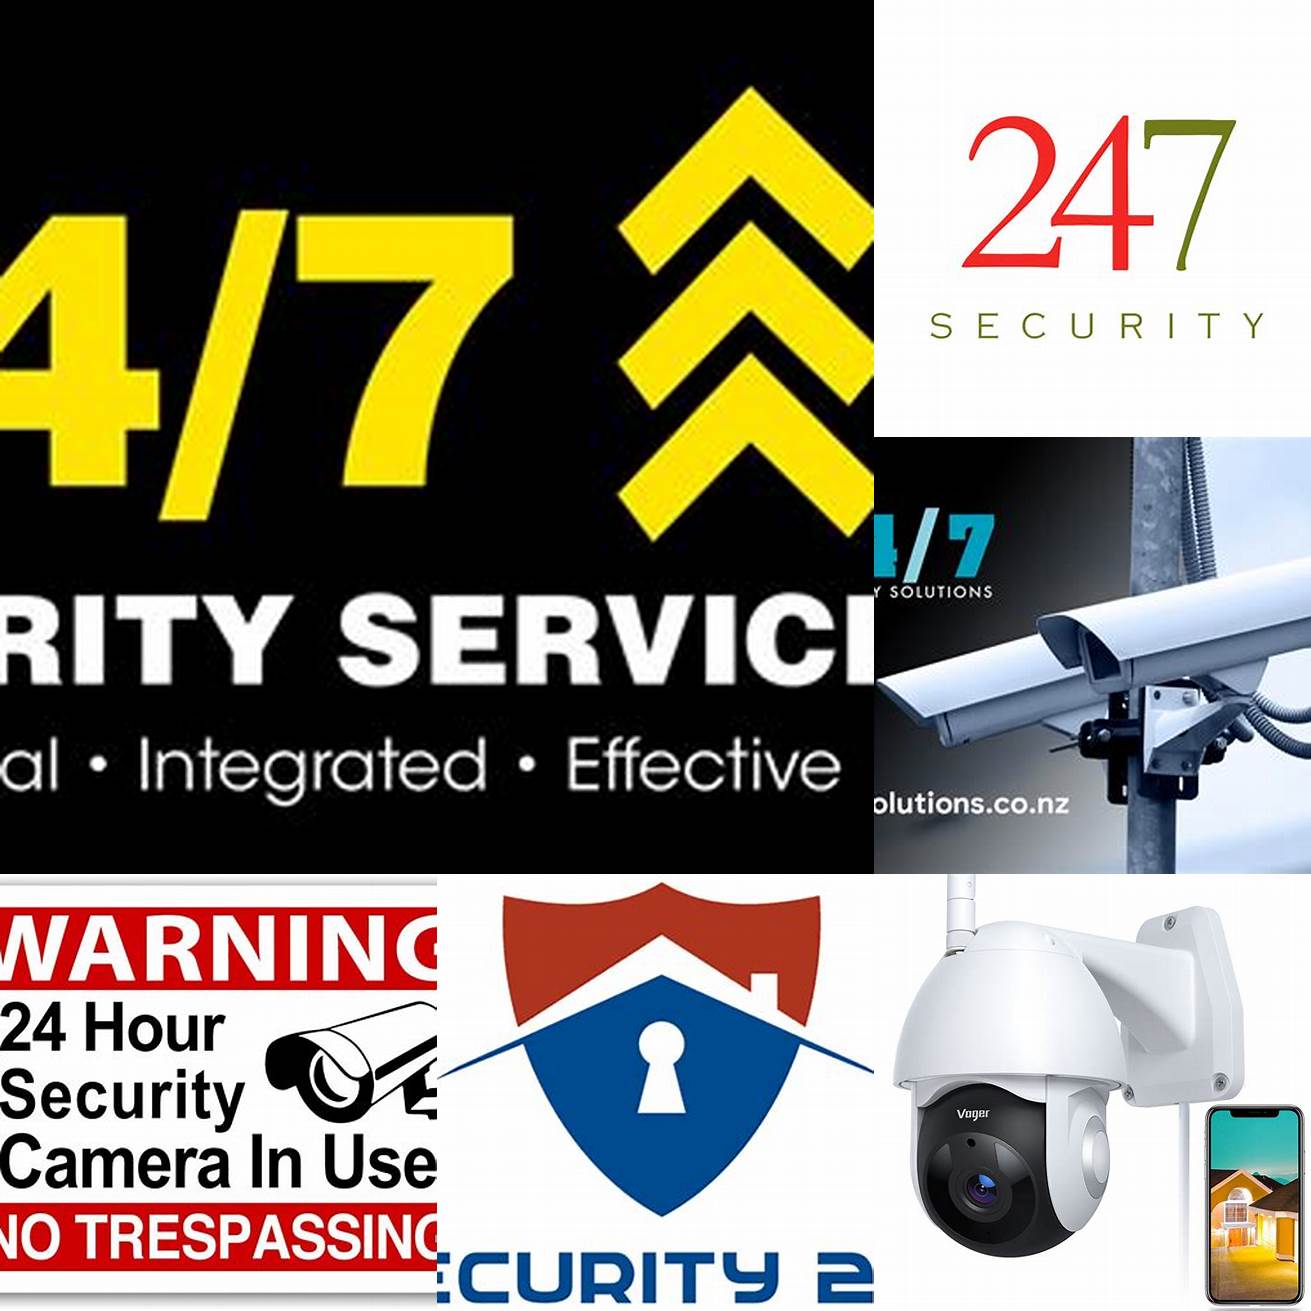 No 247 security